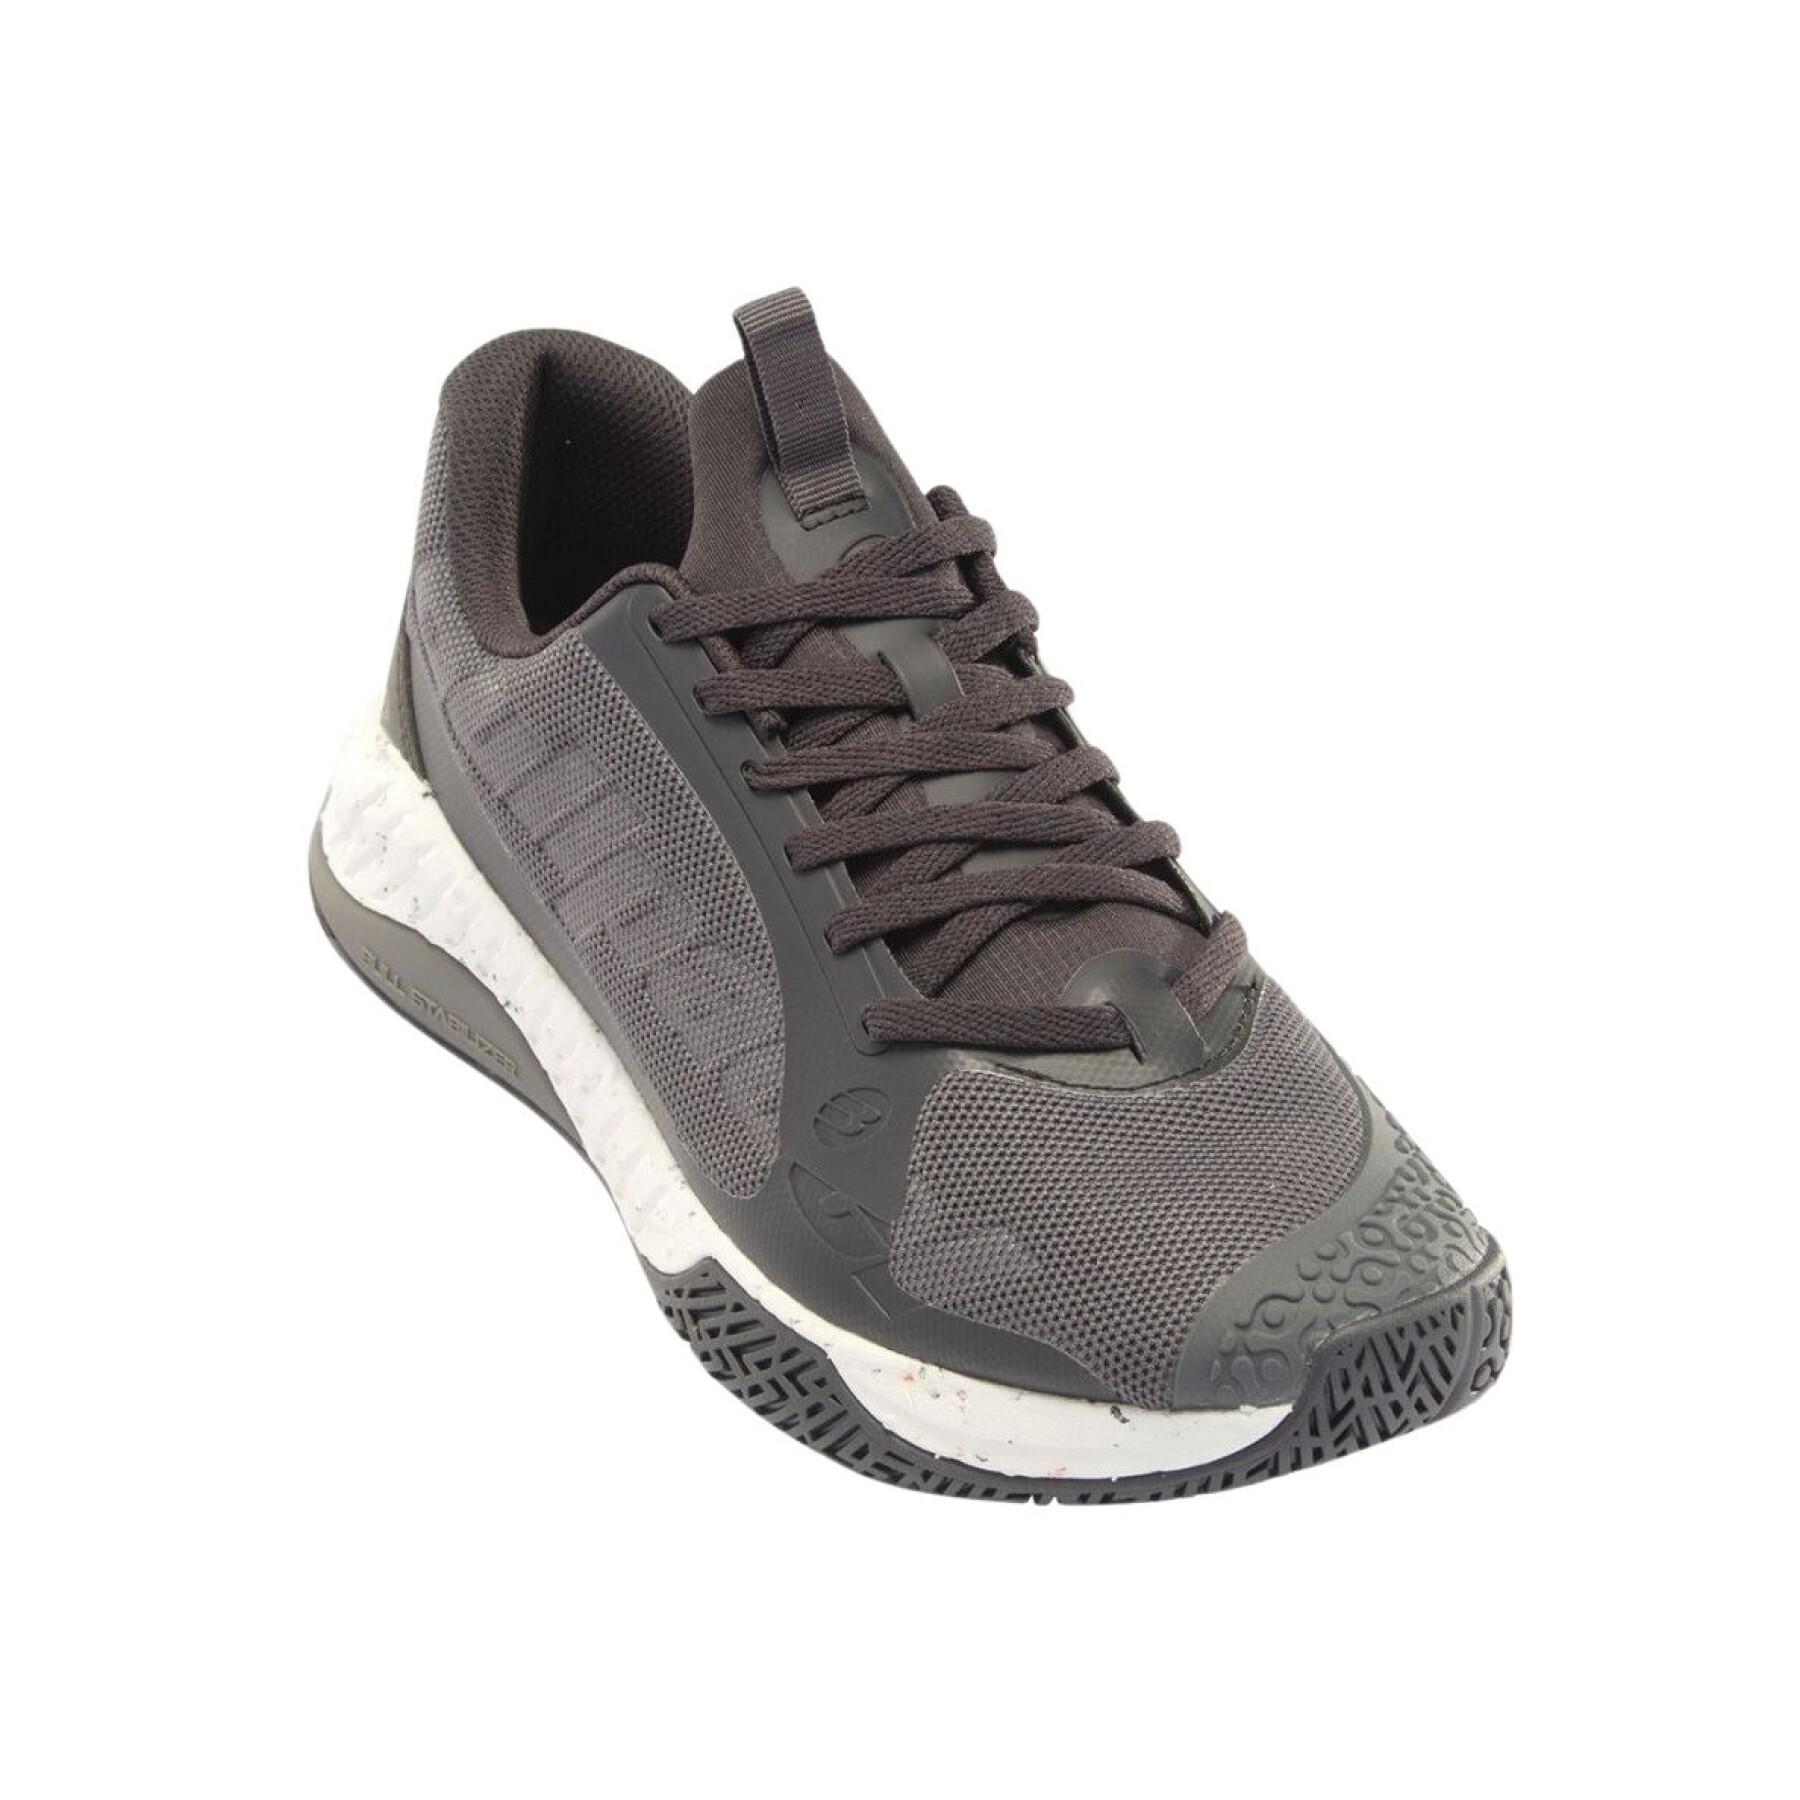 Padel shoes Bullpadel Comfort Pro 23I